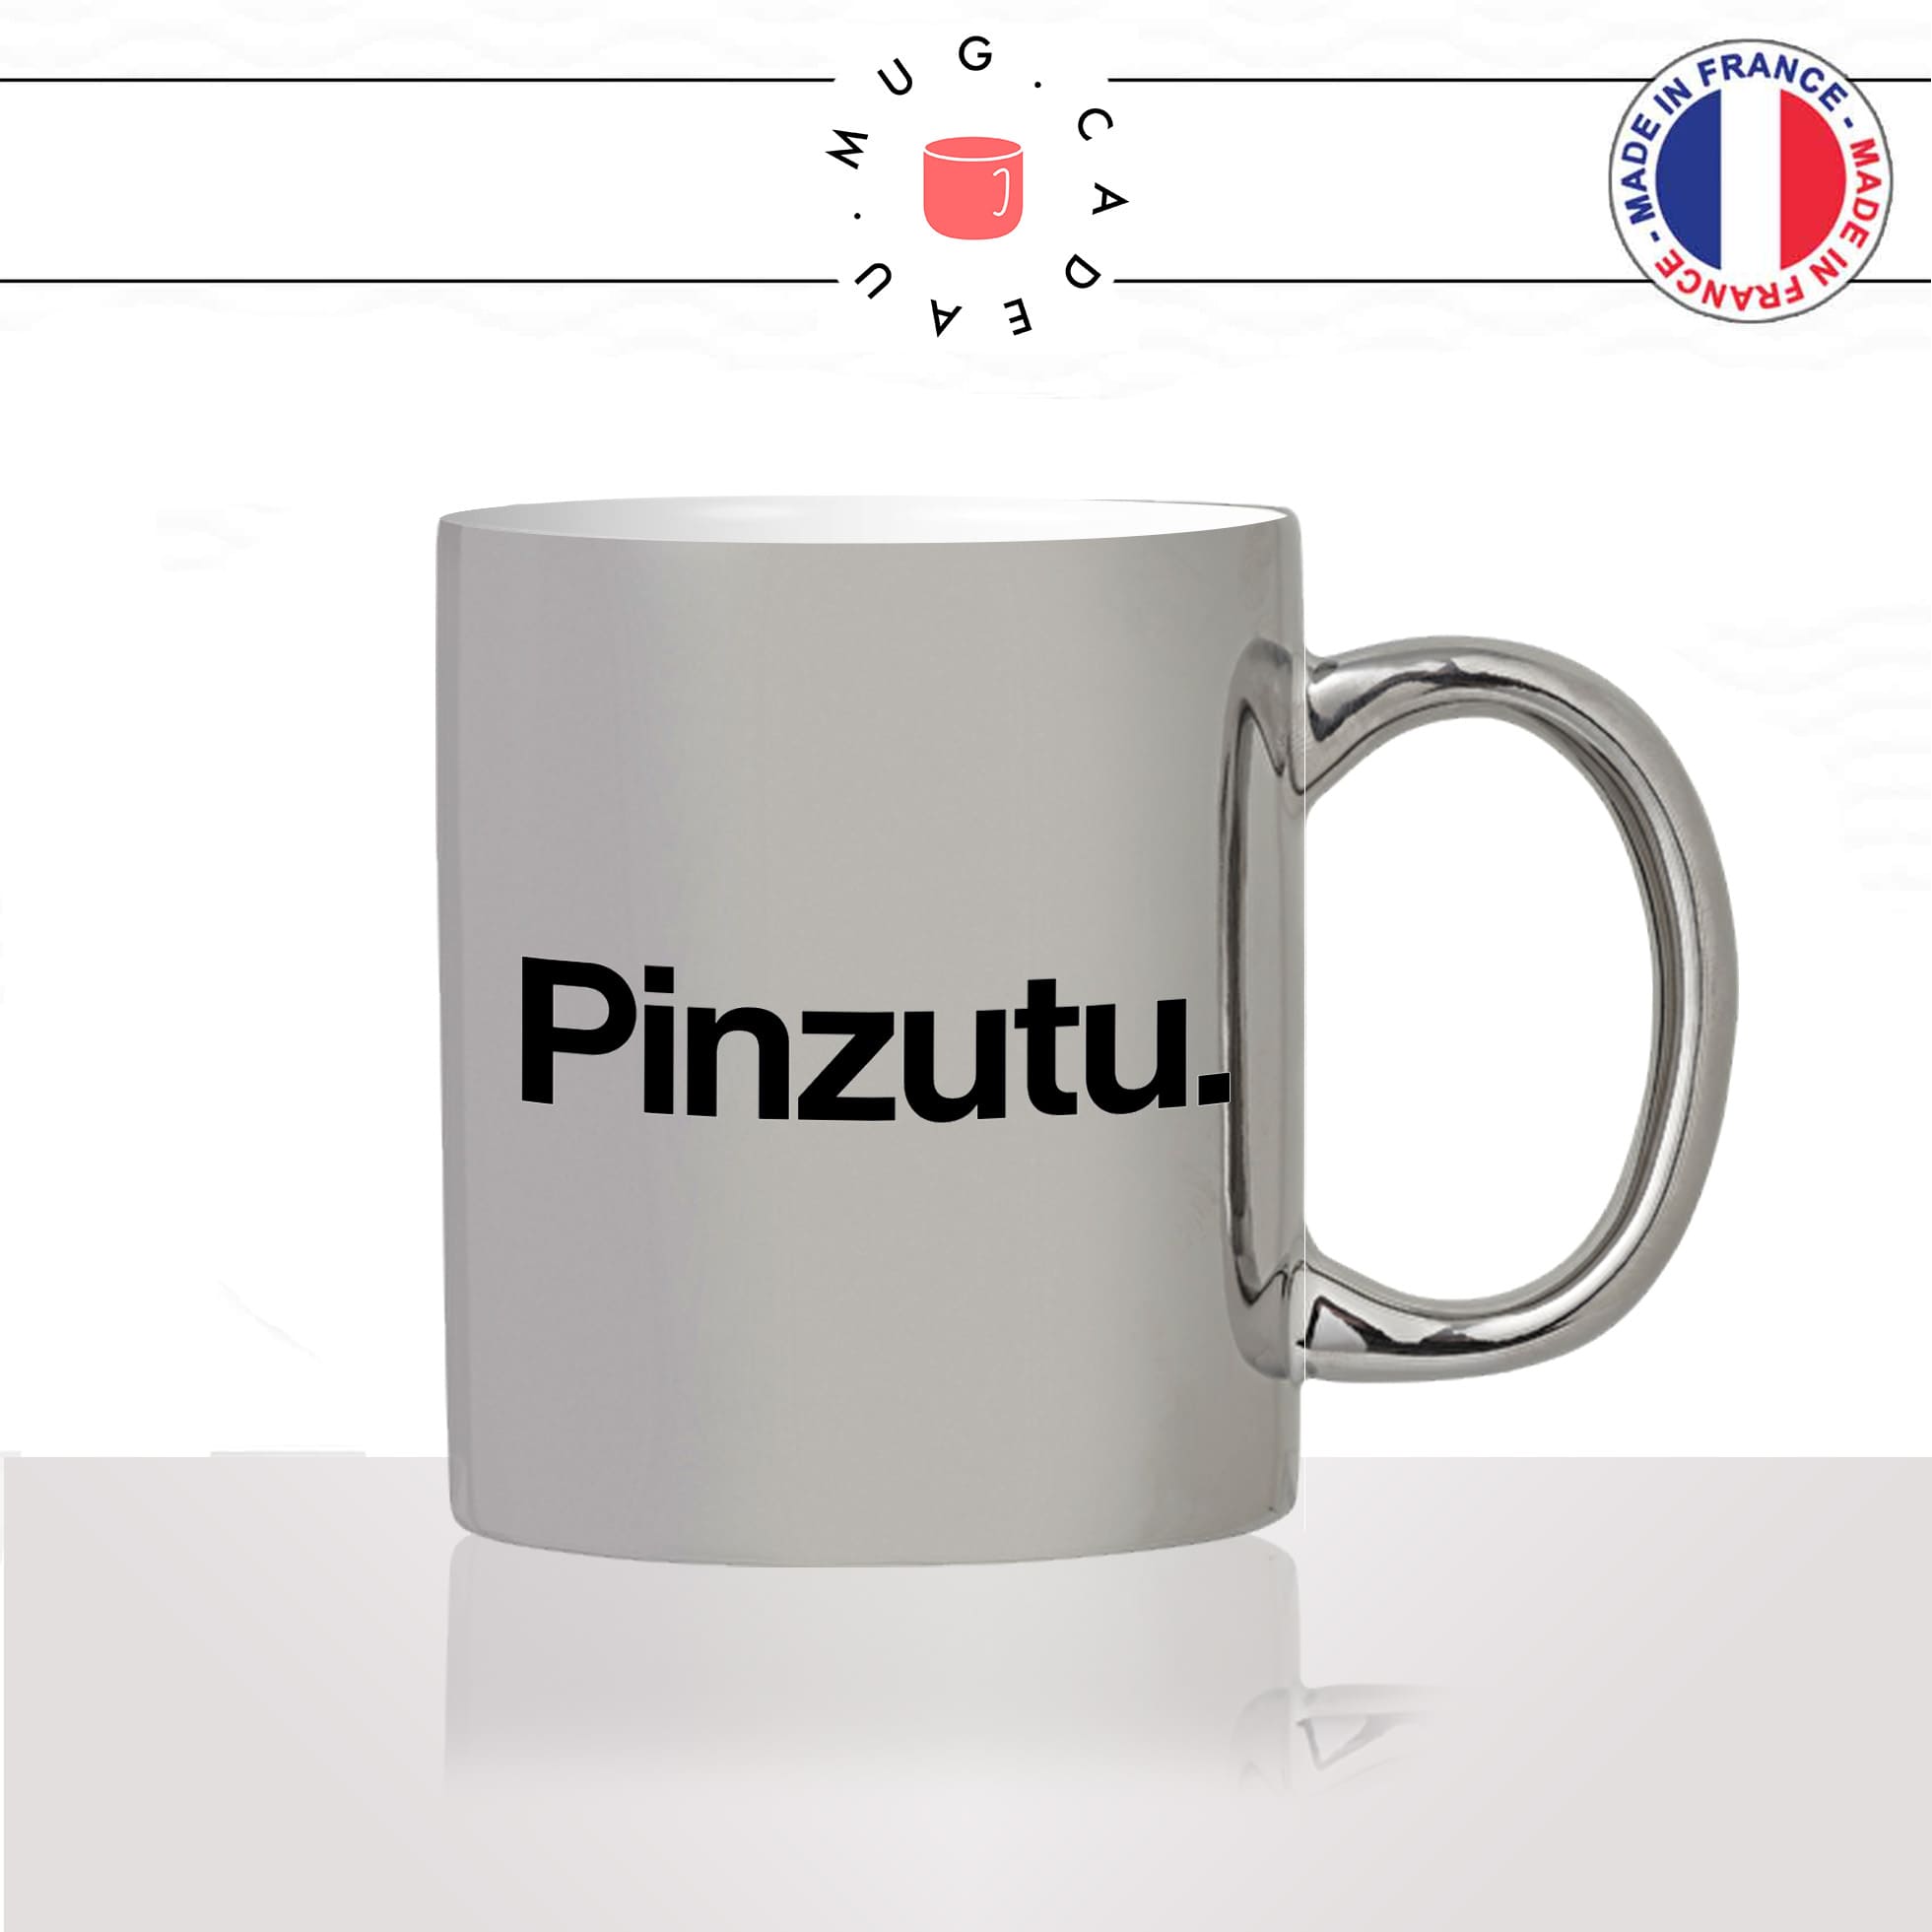 mug-tasse-argent-argenté-silver-pinzutu-touriste-corse-corsica-patois-langue-ile-de-beauté-france-francais-idée-cadeau-fun-cool-café-thé2